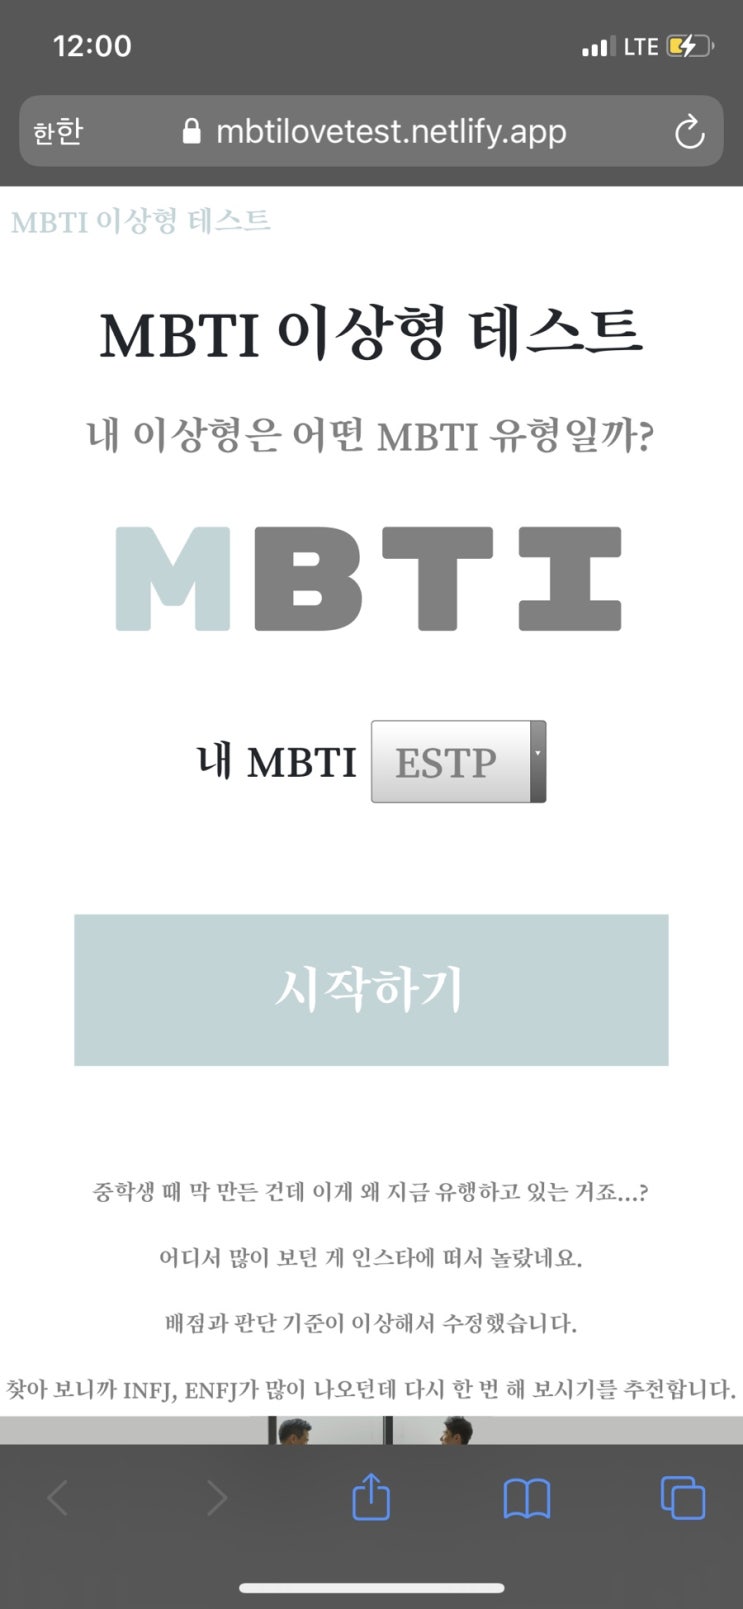 MBTI 이상형테스트 링크공유!!